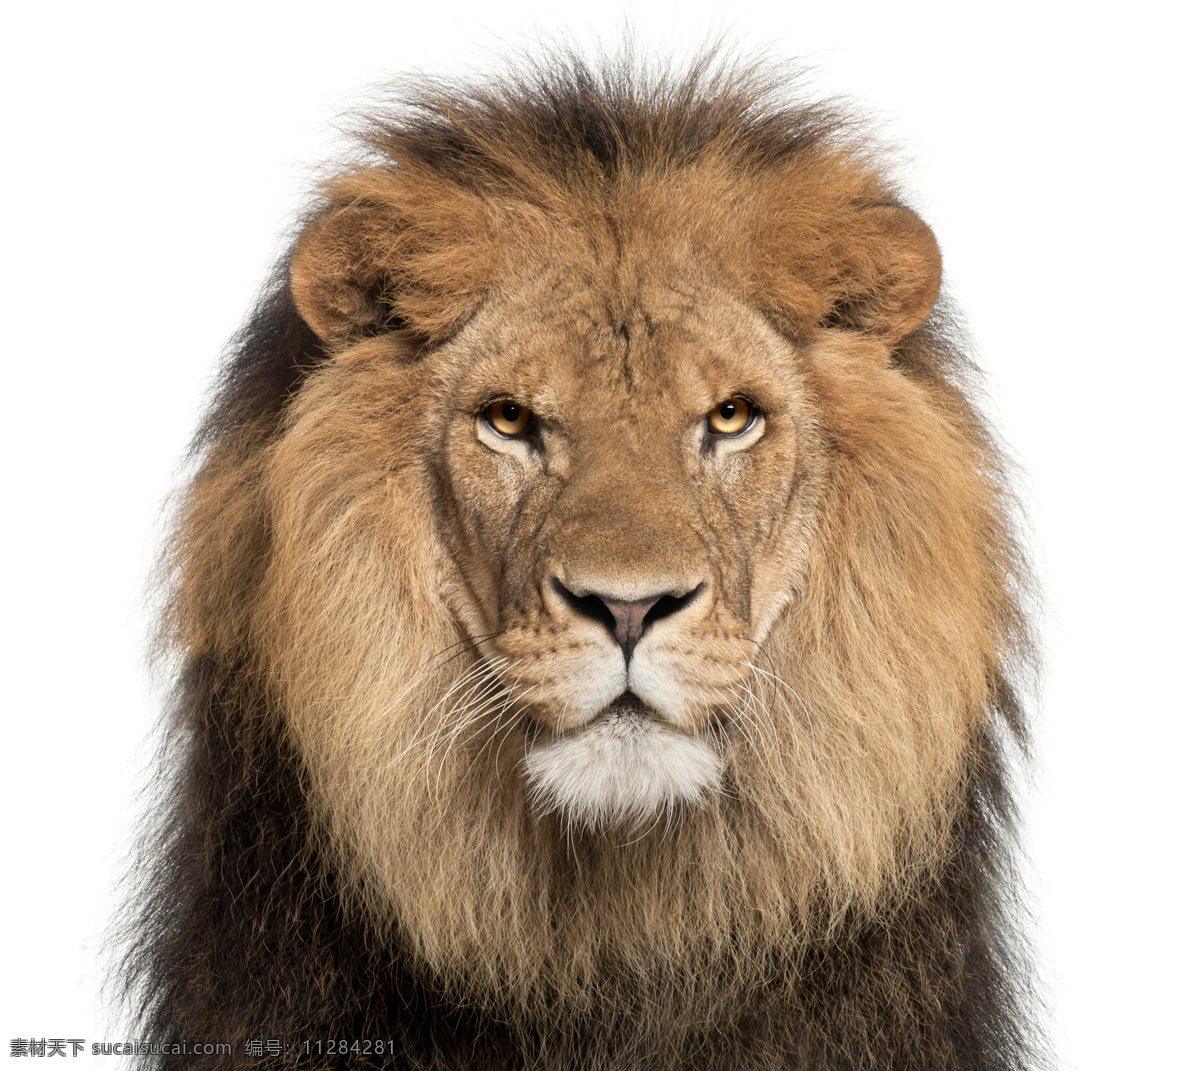 狮子头像图片 凶猛 野兽 兽中之王 狮子 头像图片 生物世界 野生动物